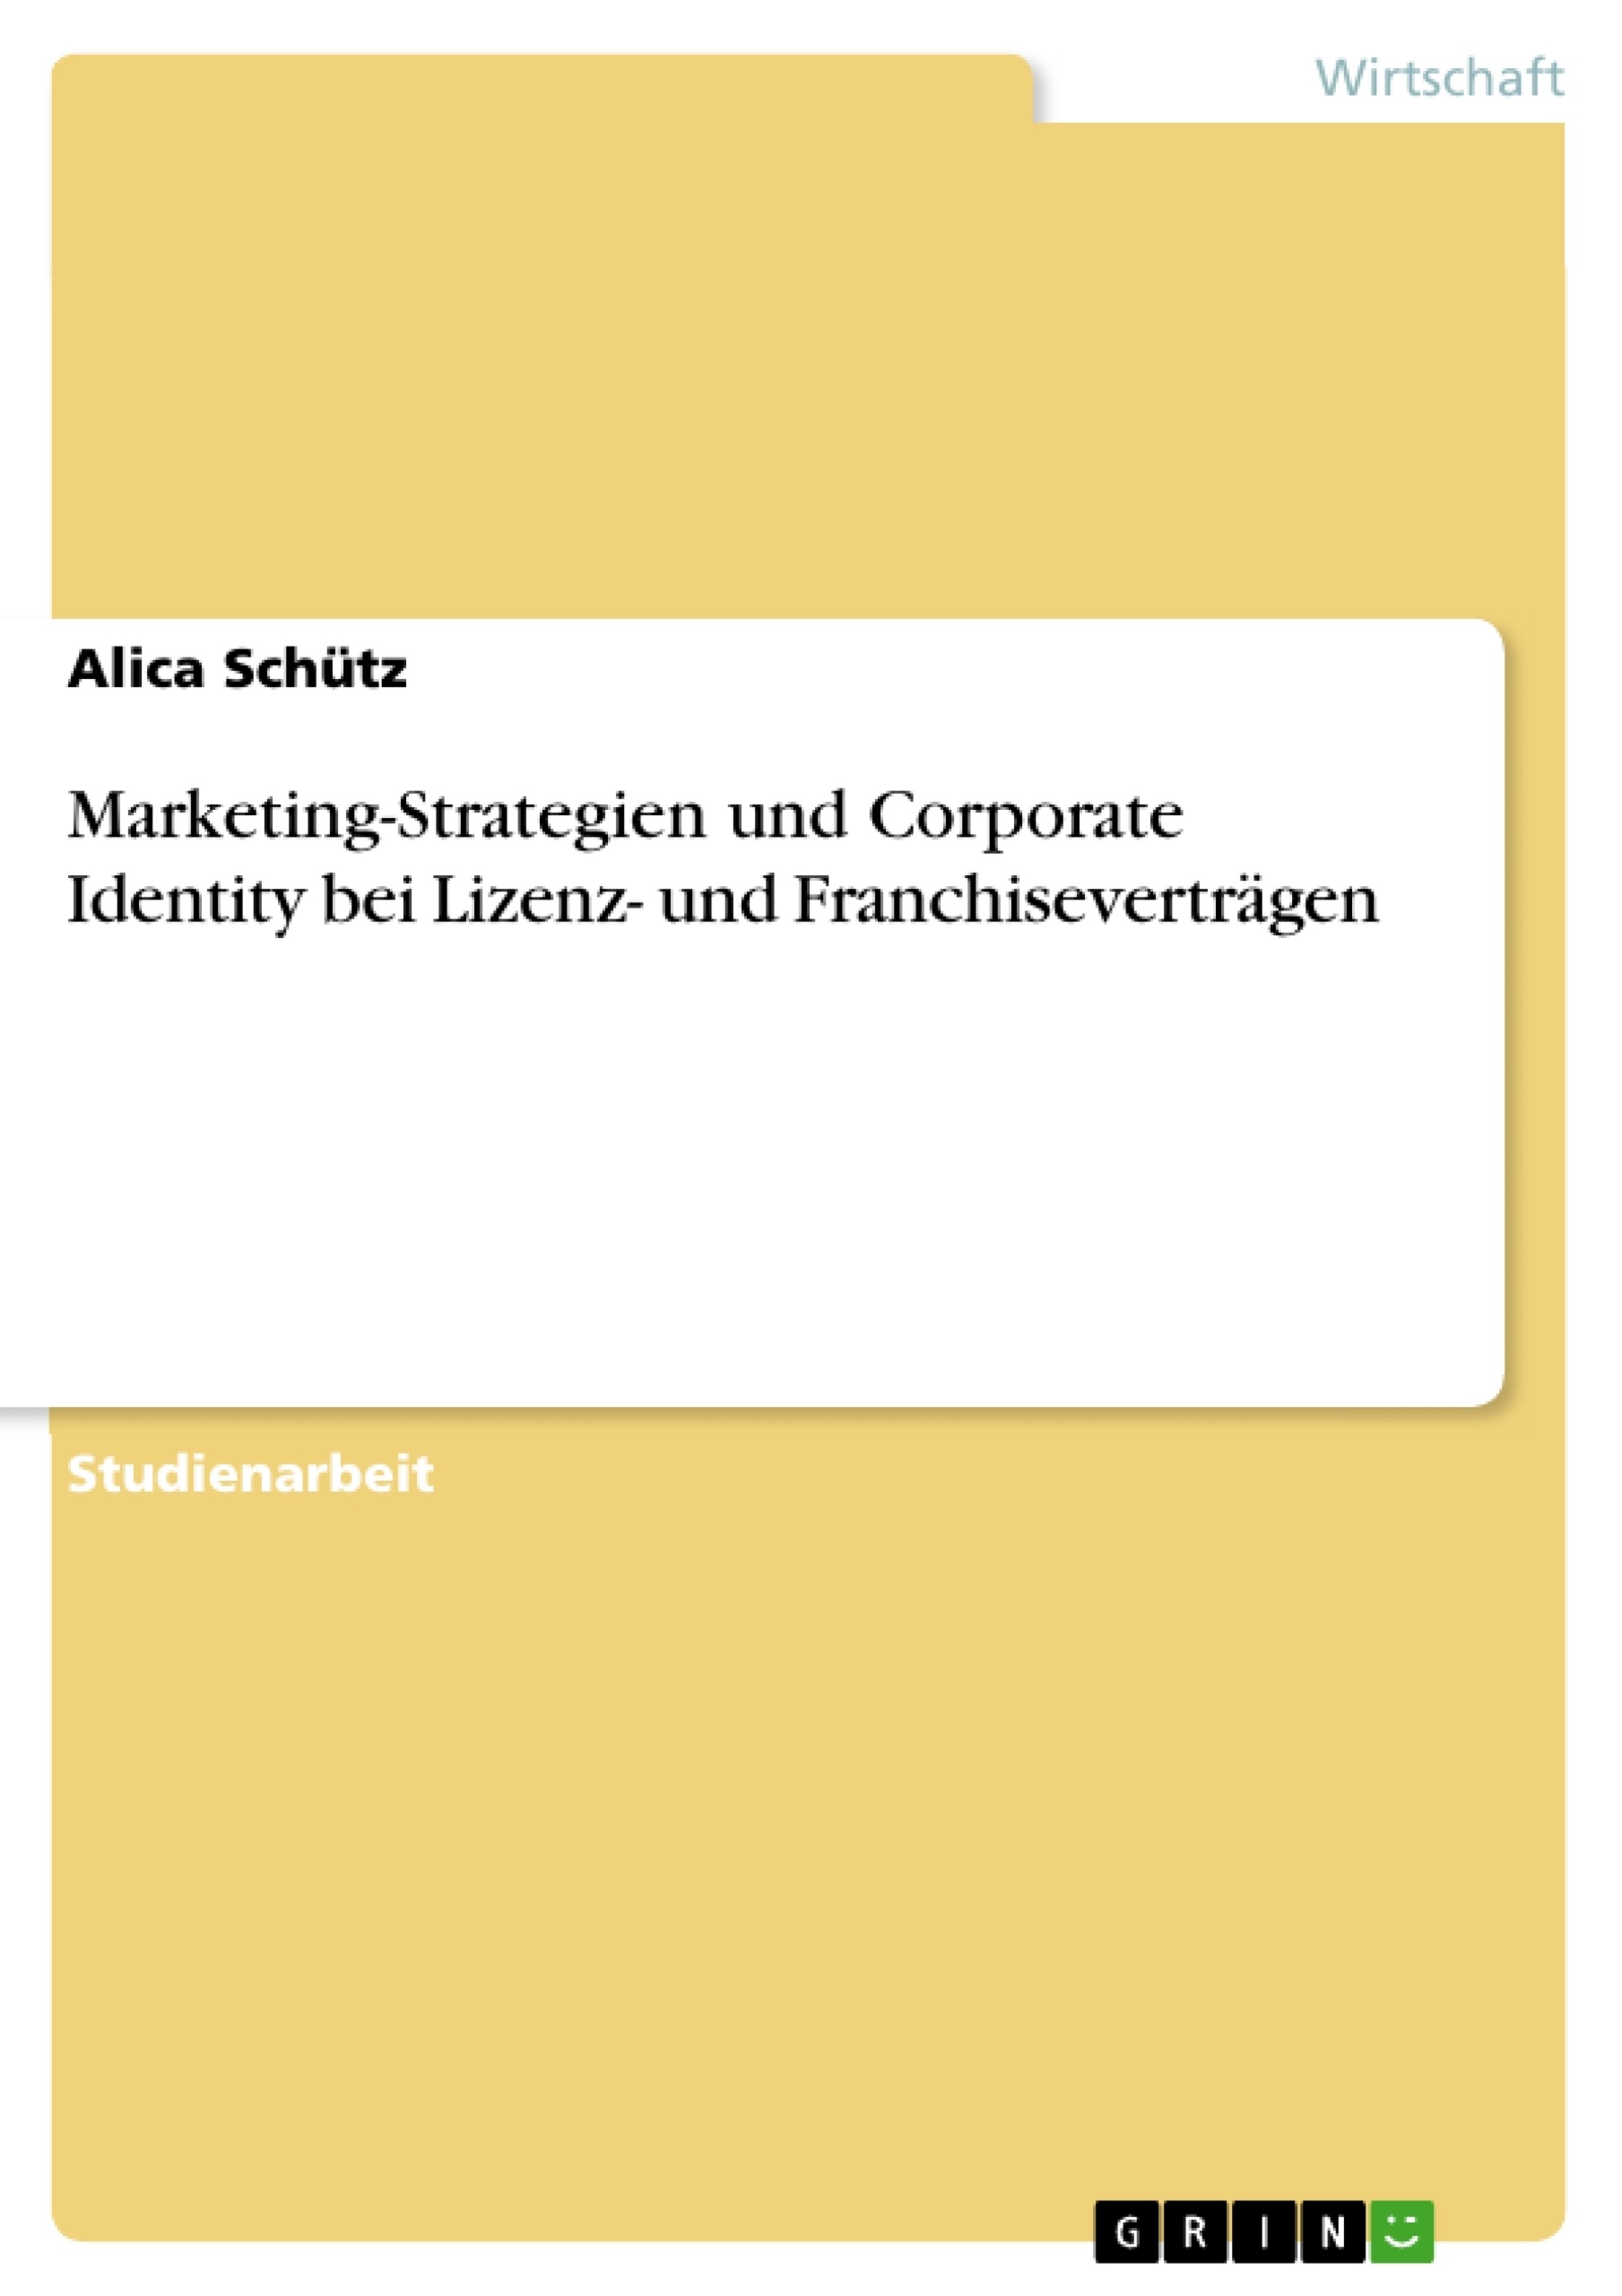 Título: Marketing-Strategien und Corporate Identity bei Lizenz- und Franchiseverträgen